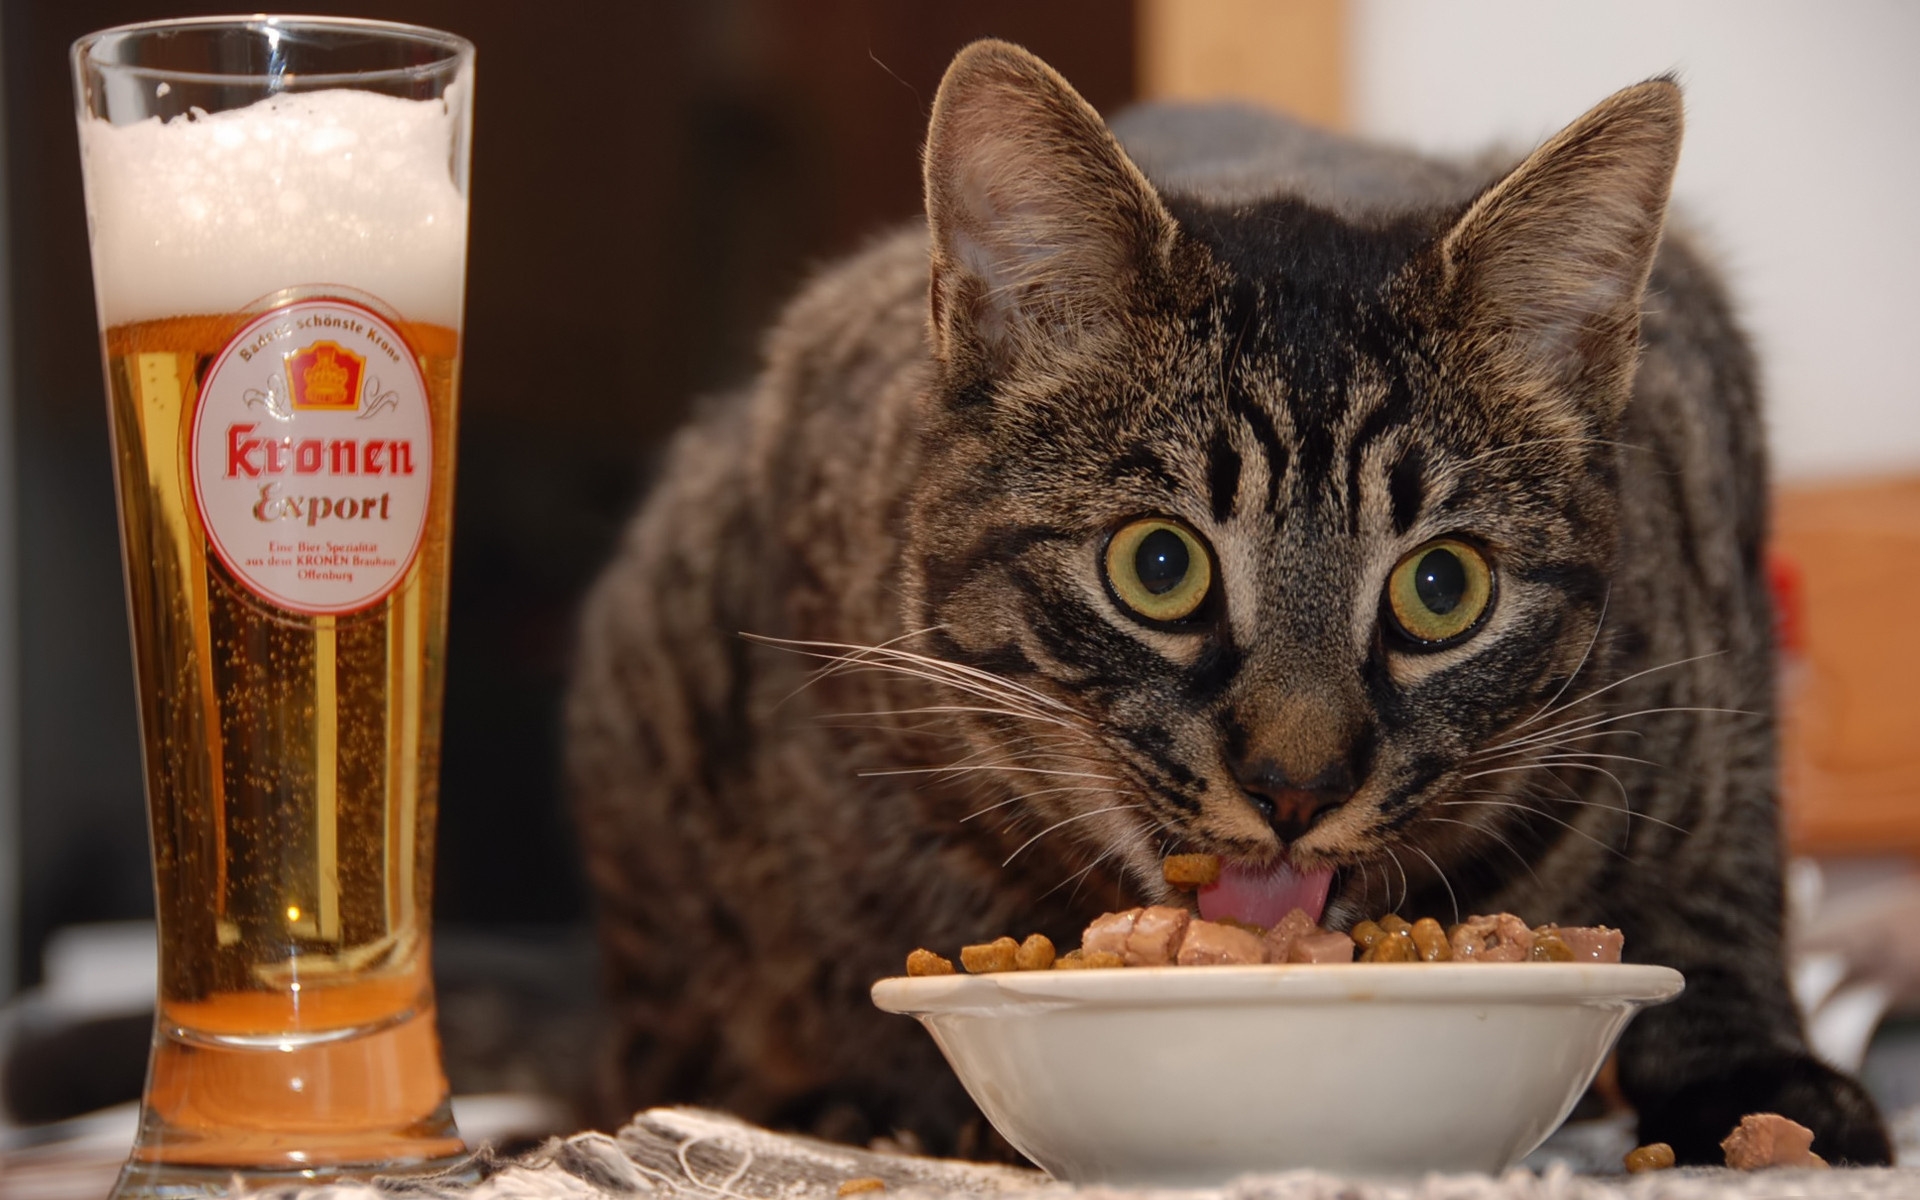 Картинки Кошка, лицо, удивительно, пиво, еда фото и обои на рабочий стол